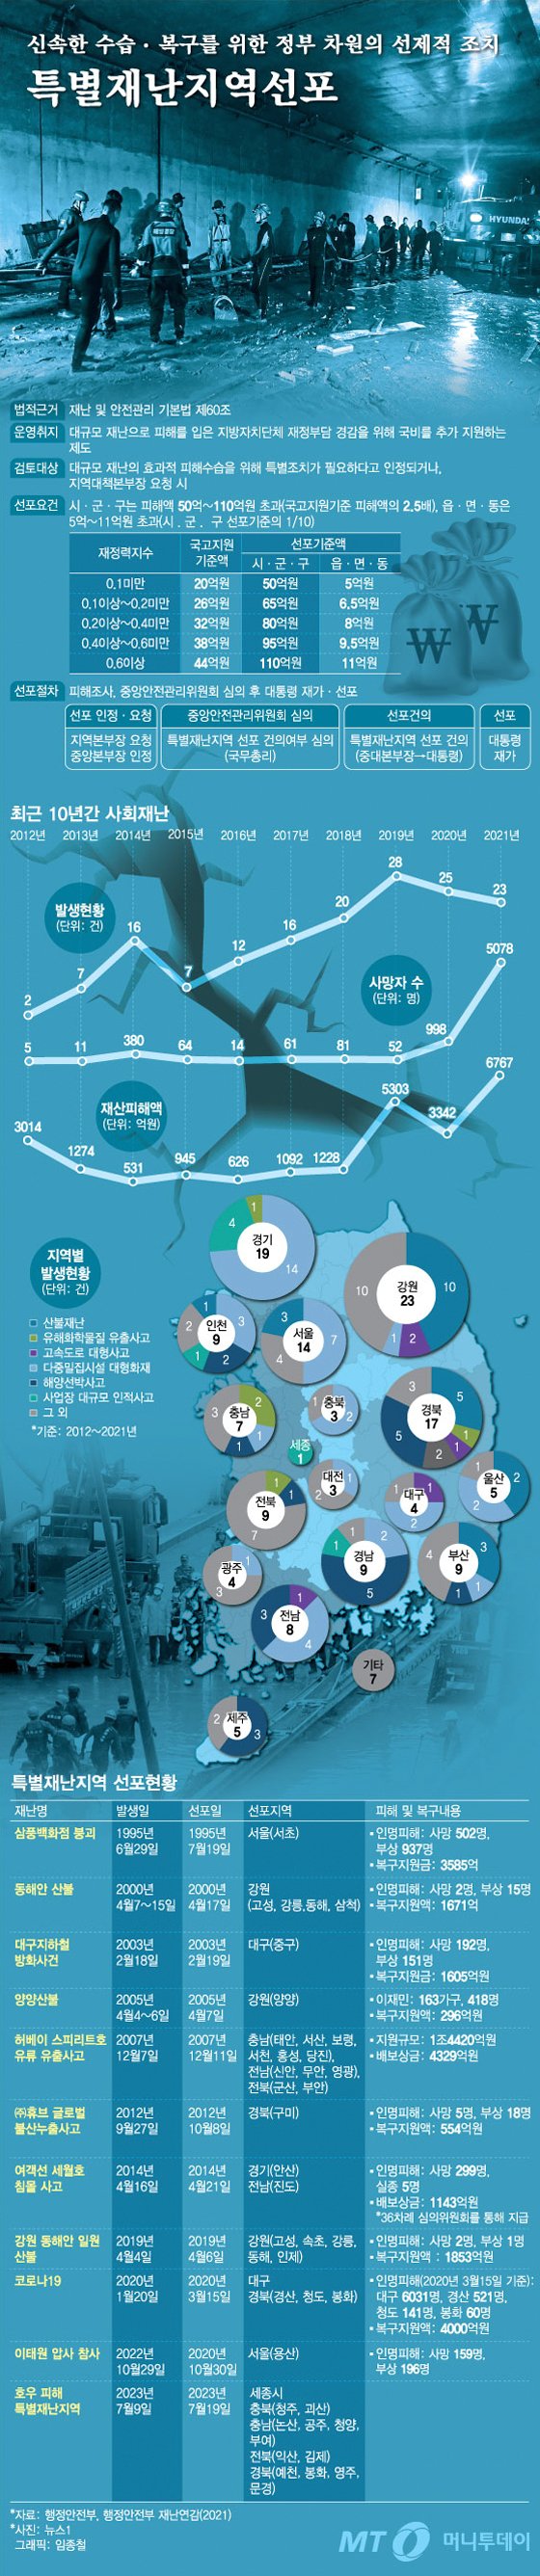 [더그래픽]신속한 수습 . 복구를 위한 정부 차원의 선제적 조치 '특별재난지역선포'